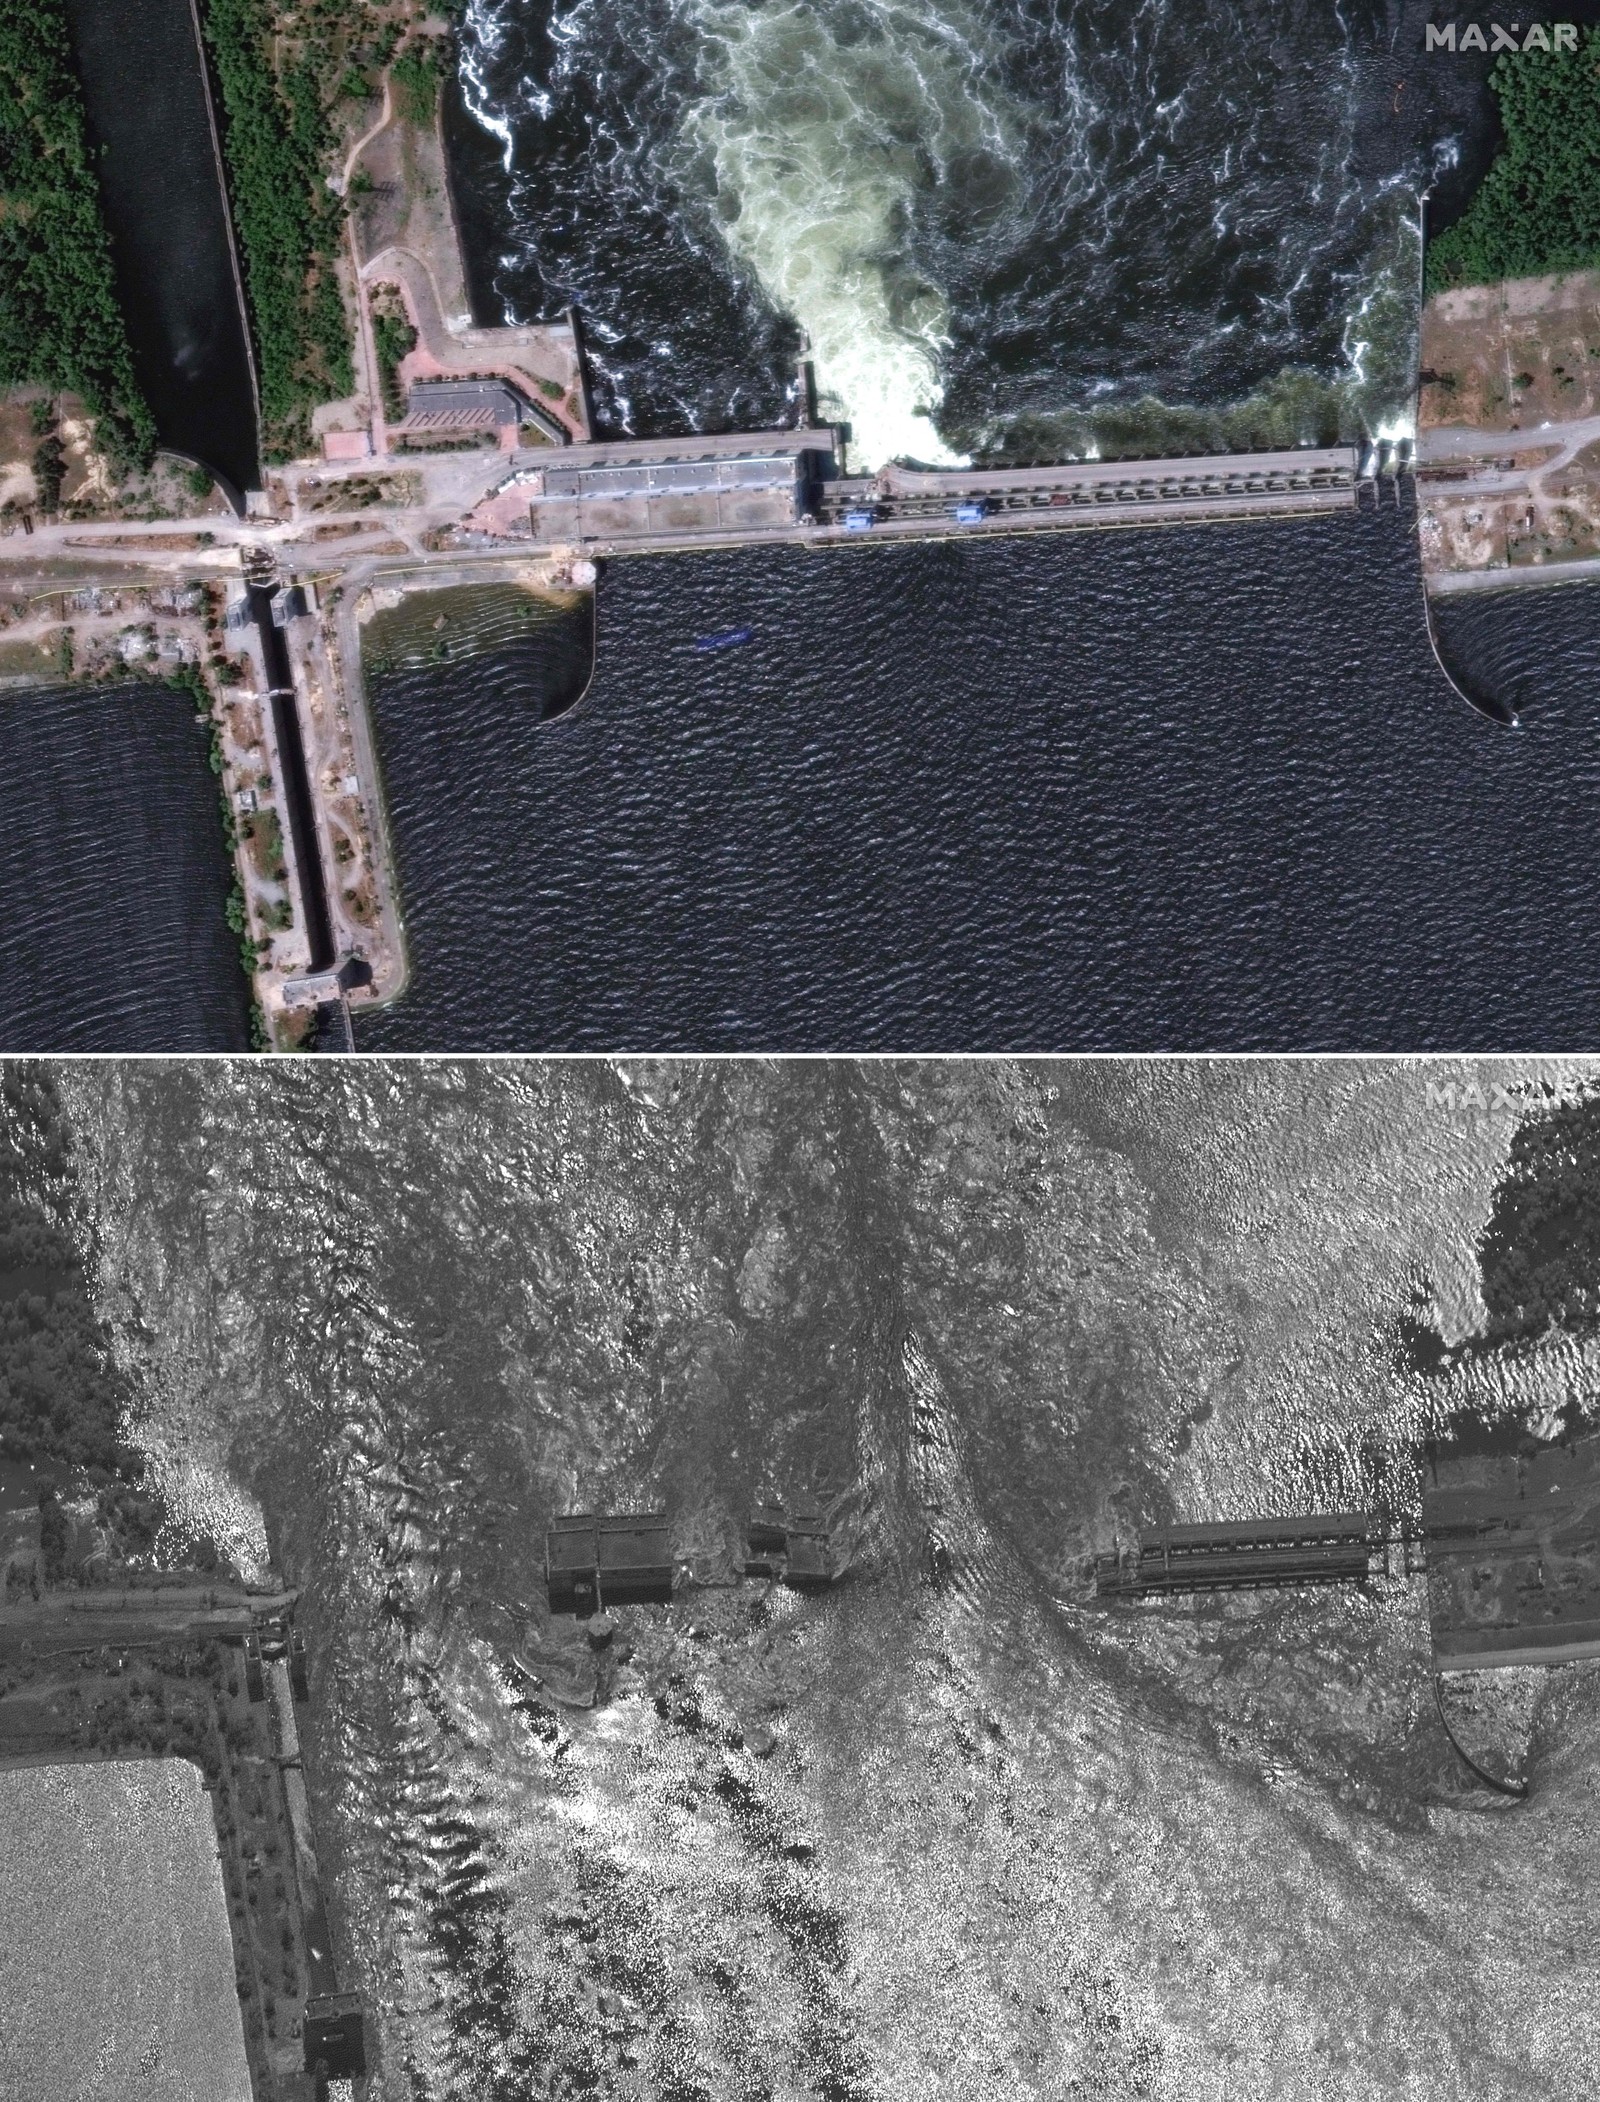 Imagem de satélite mostra a barragem da Usina Hidrelétrica de Kakhovka em 5 de junho (topo) e no dia seguinte, após ter sido danificada — Foto: Maxar Technologies / AFP